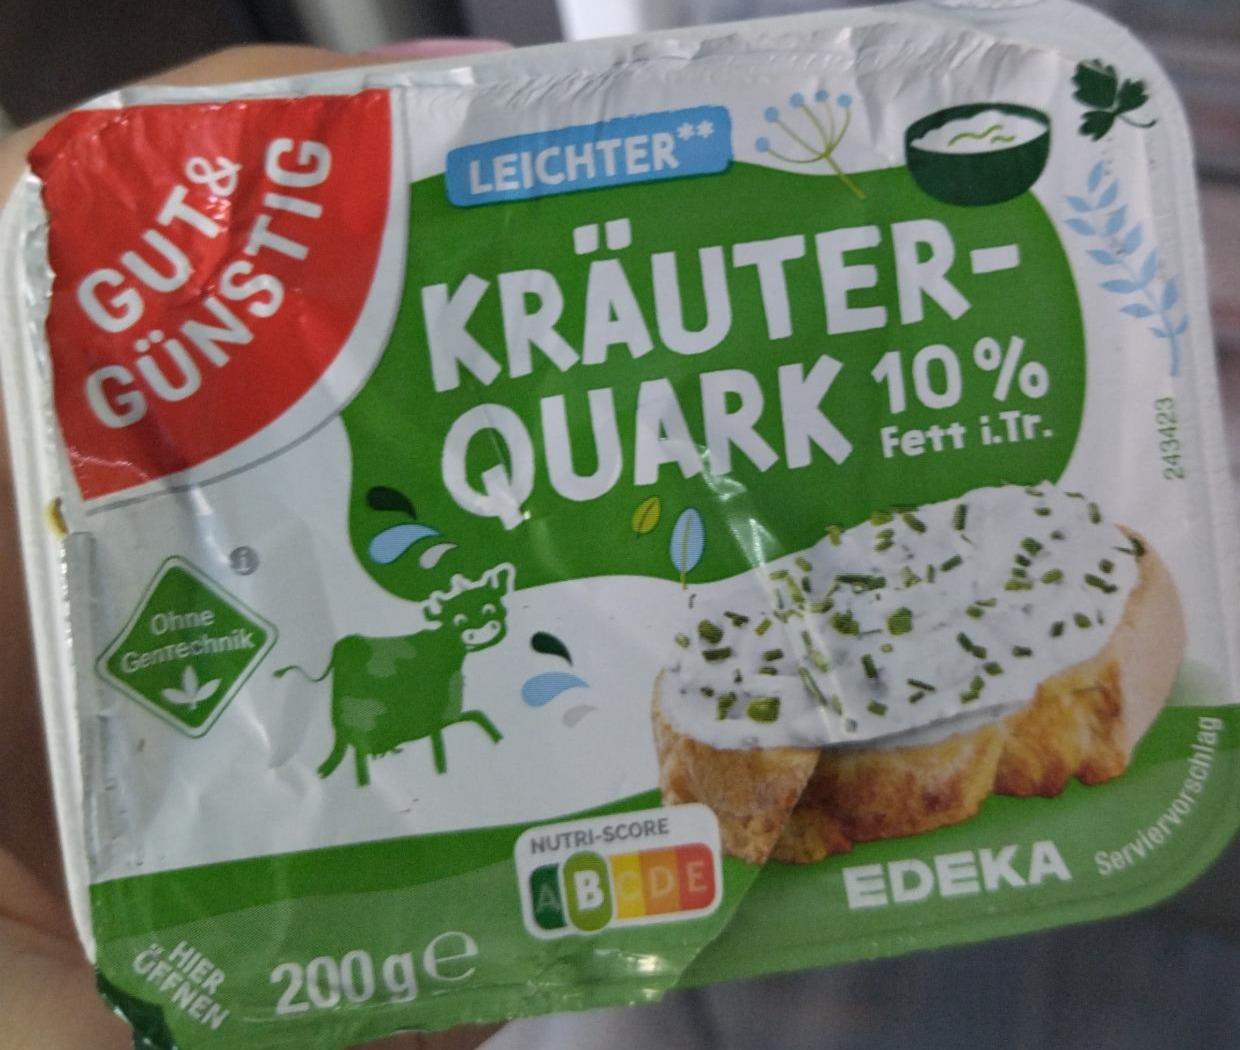 Fotografie - Kräuter-Quark 10% Fett i.Tr. Gut&Günstig